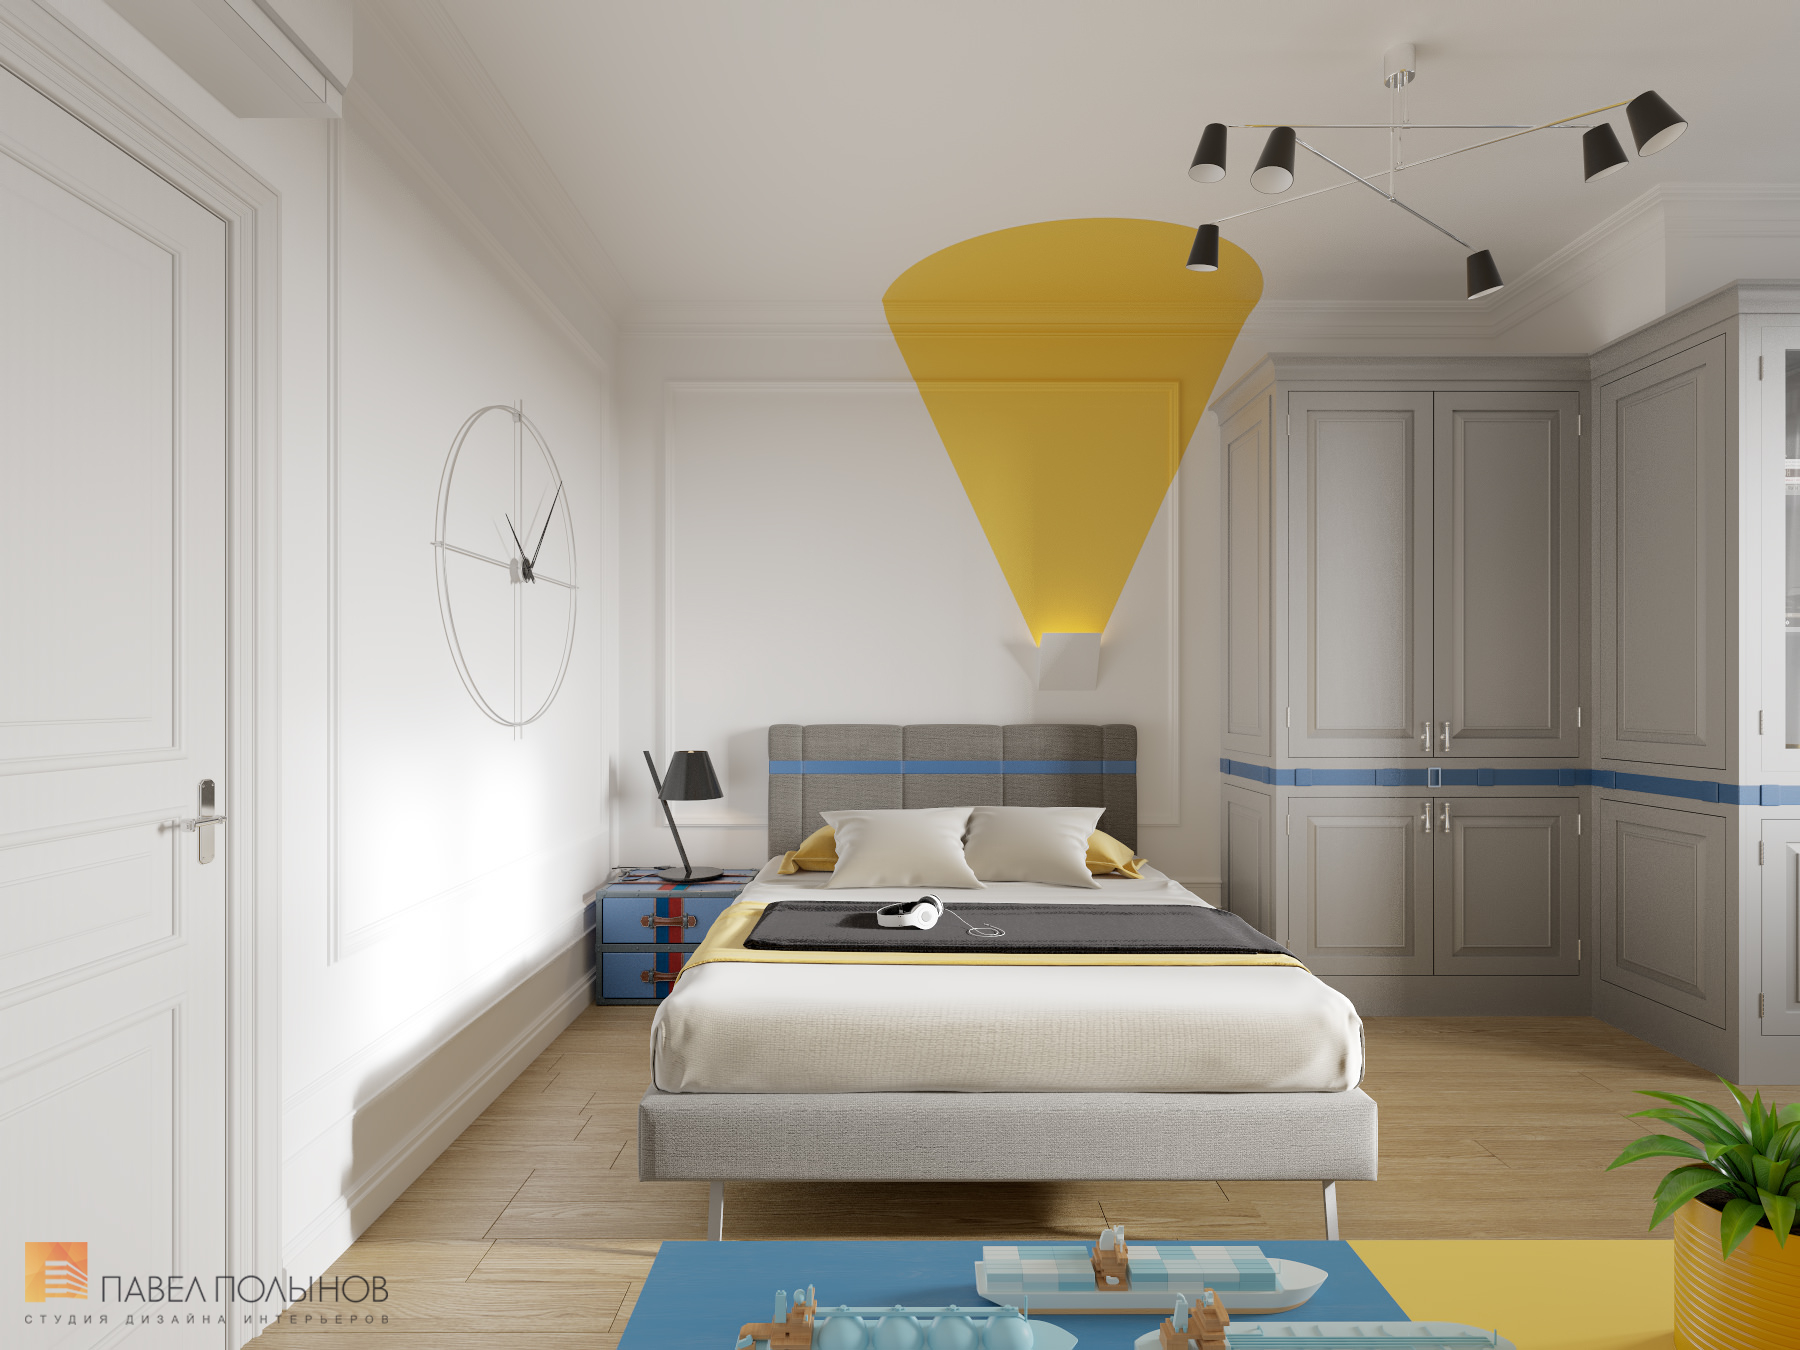 Фото детская комната из проекта «Интерьер квартиры в стиле неоклассики, ЖК «Парадный квартал», 190 кв.м.»